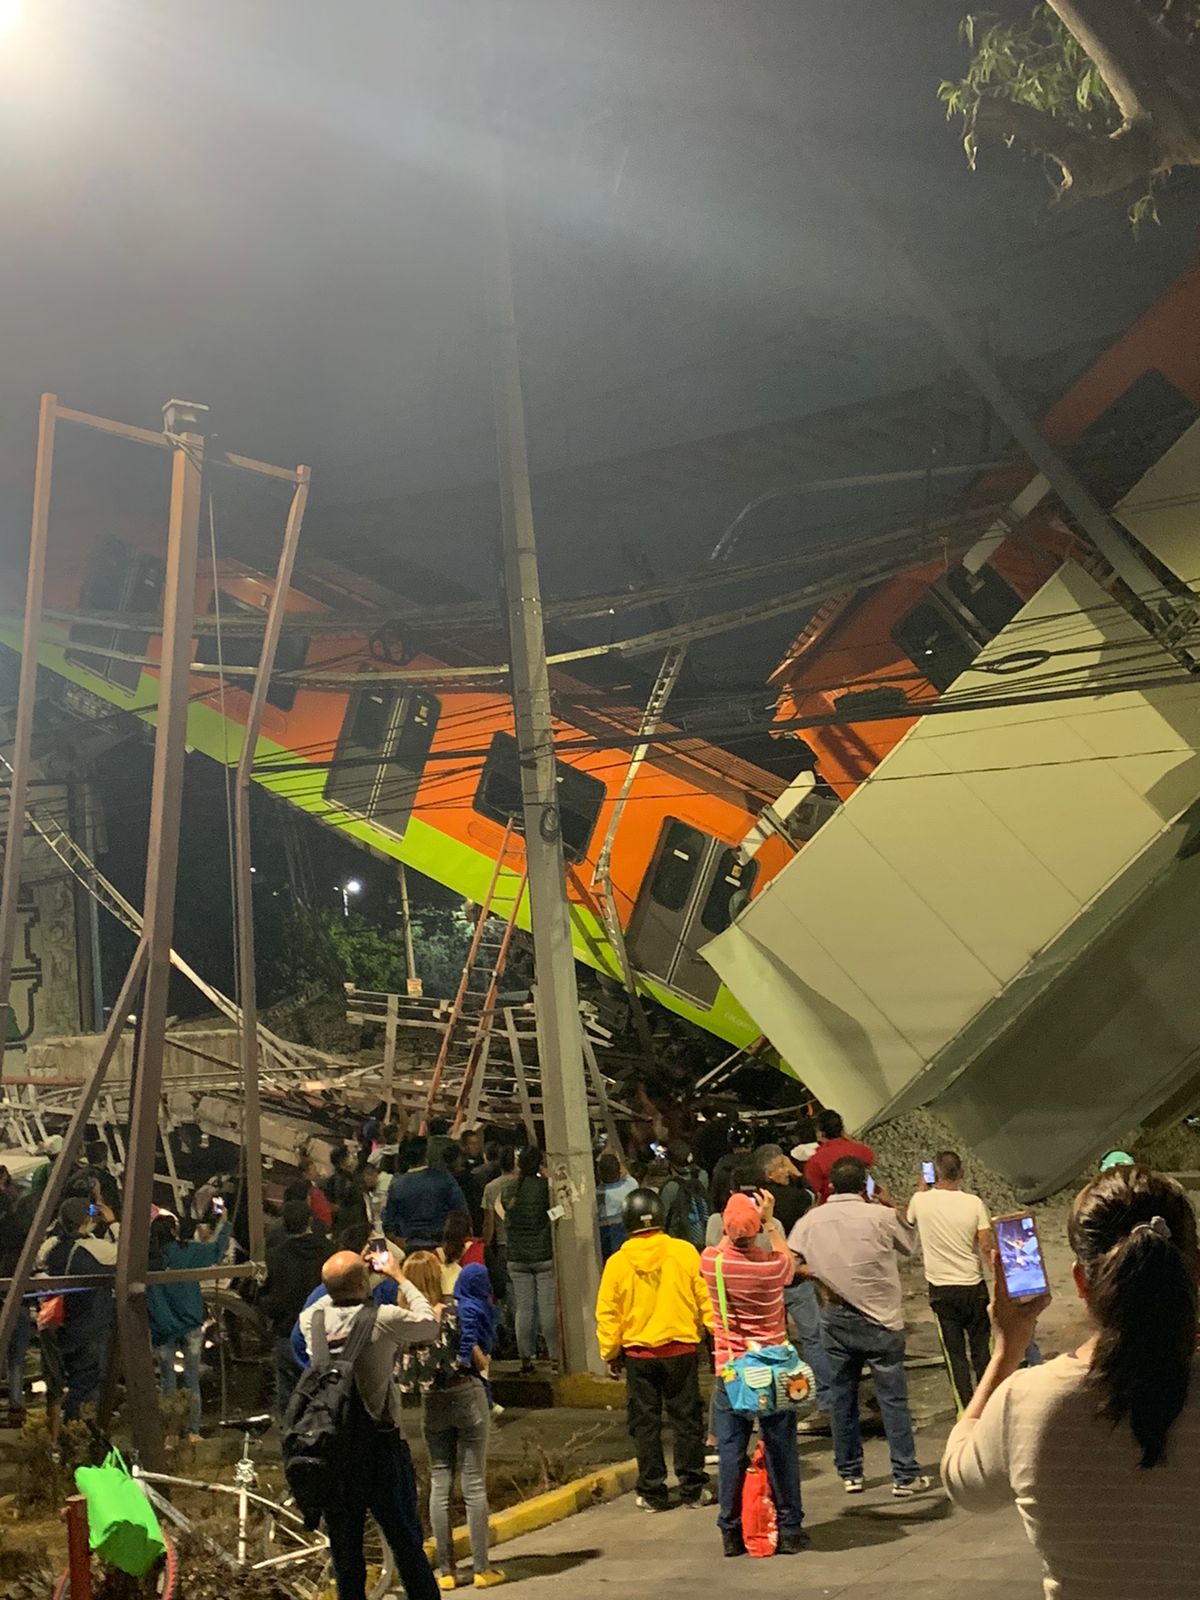 Un tramo de un puente elevado de la línea 12 del Metro, en la Ciudad de México, ha colapsado esta noche con todo y dos vagones de un tren, reportan medios de comunicación en la capital del país. Se están reportando de manera preliminar un accidente vehicular como principal causa del desplome, del cual ya se está informando sobre fallecimientos y heridos.